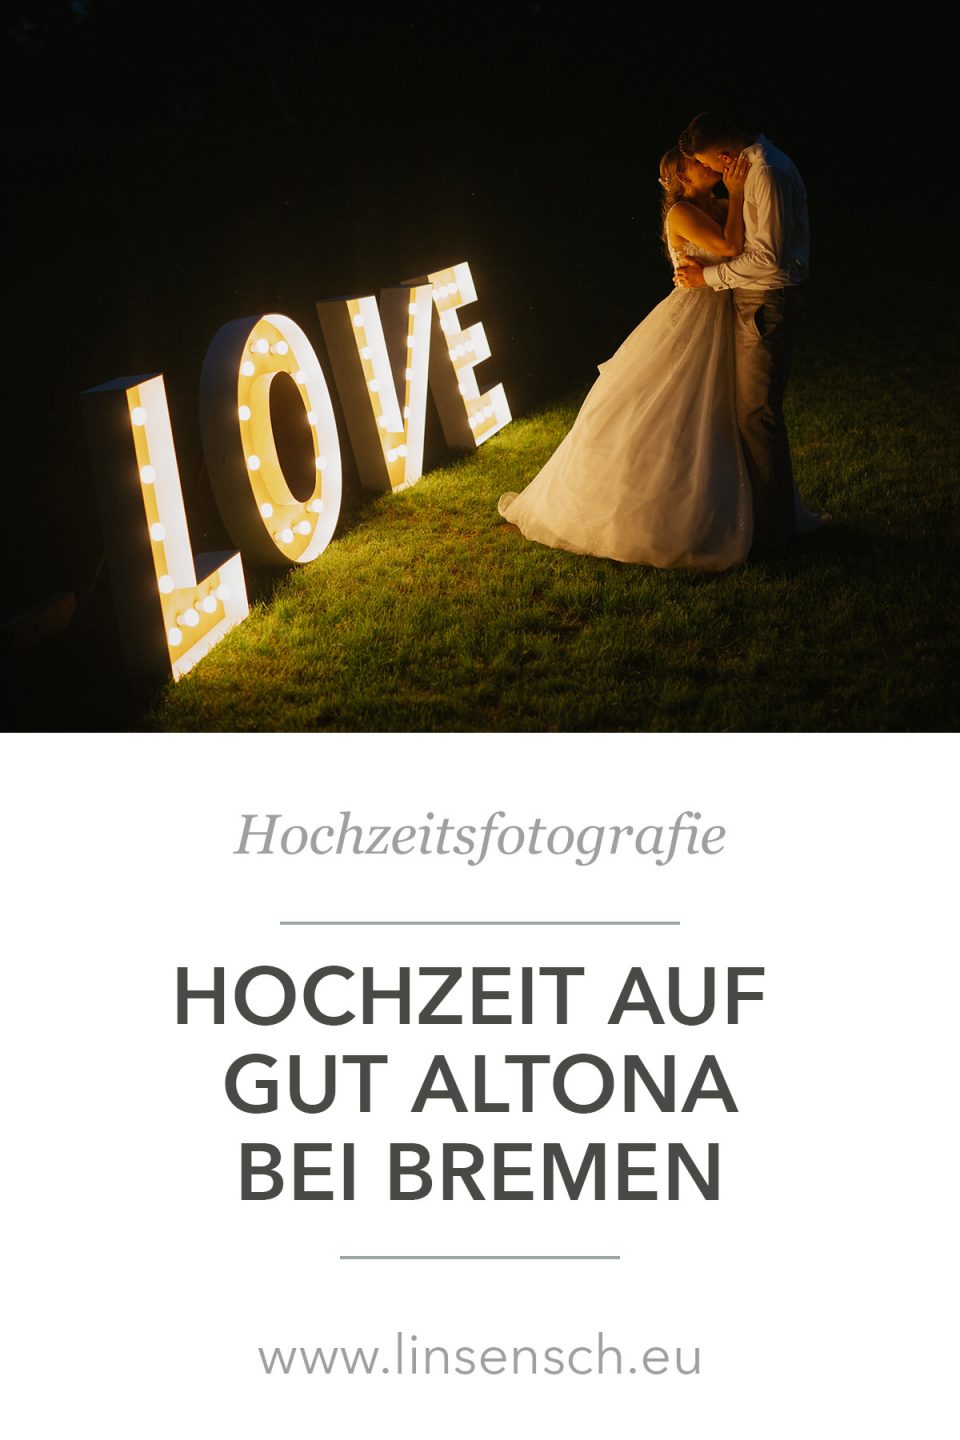 Hochzeitsfotografie: Hochzeit auf Gut Altona bei Bremen